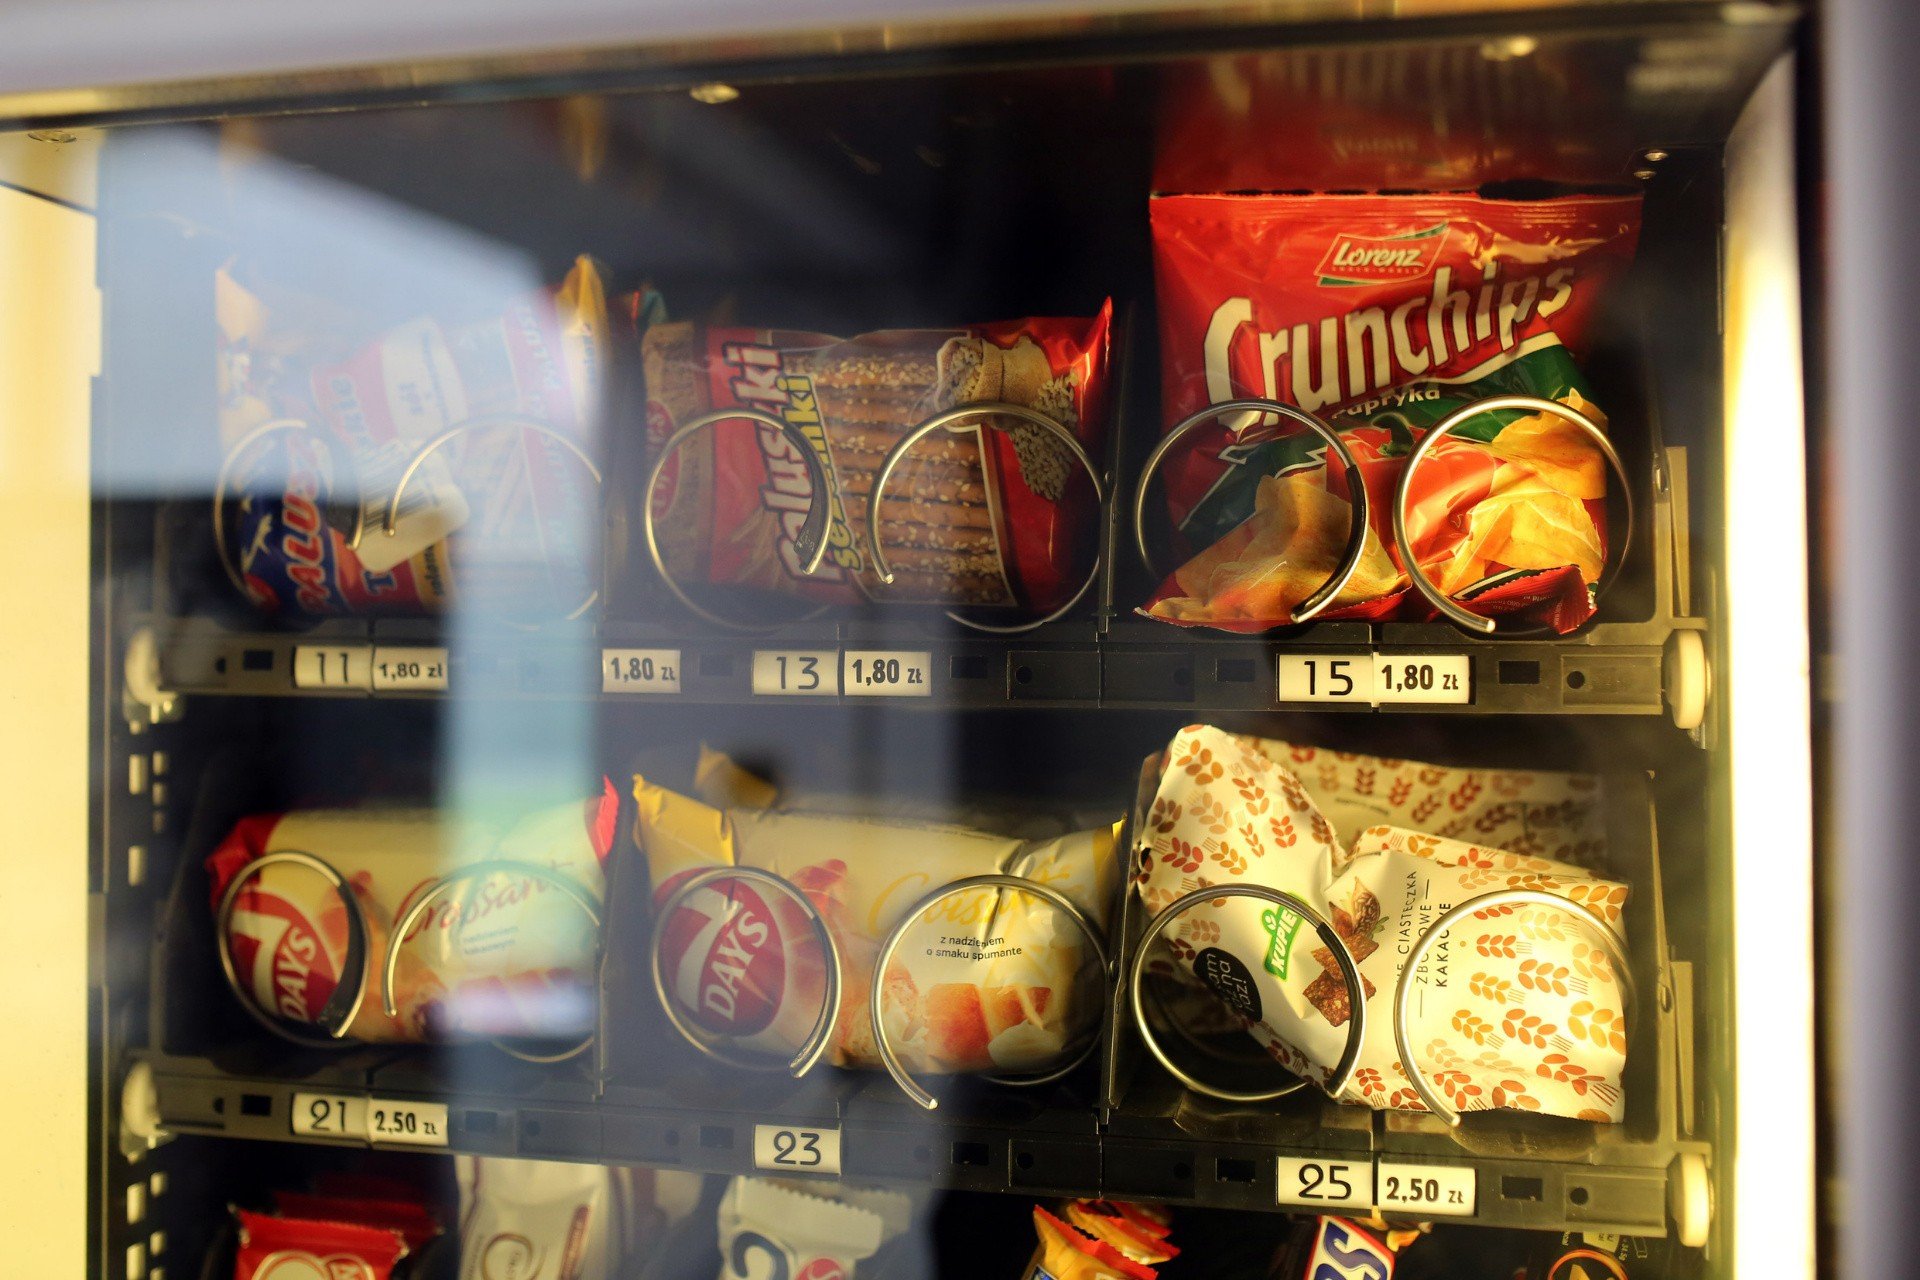 Automaty Z Jedzeniem W Szkole Automat z jedzeniem na uczelni | Portal i.pl